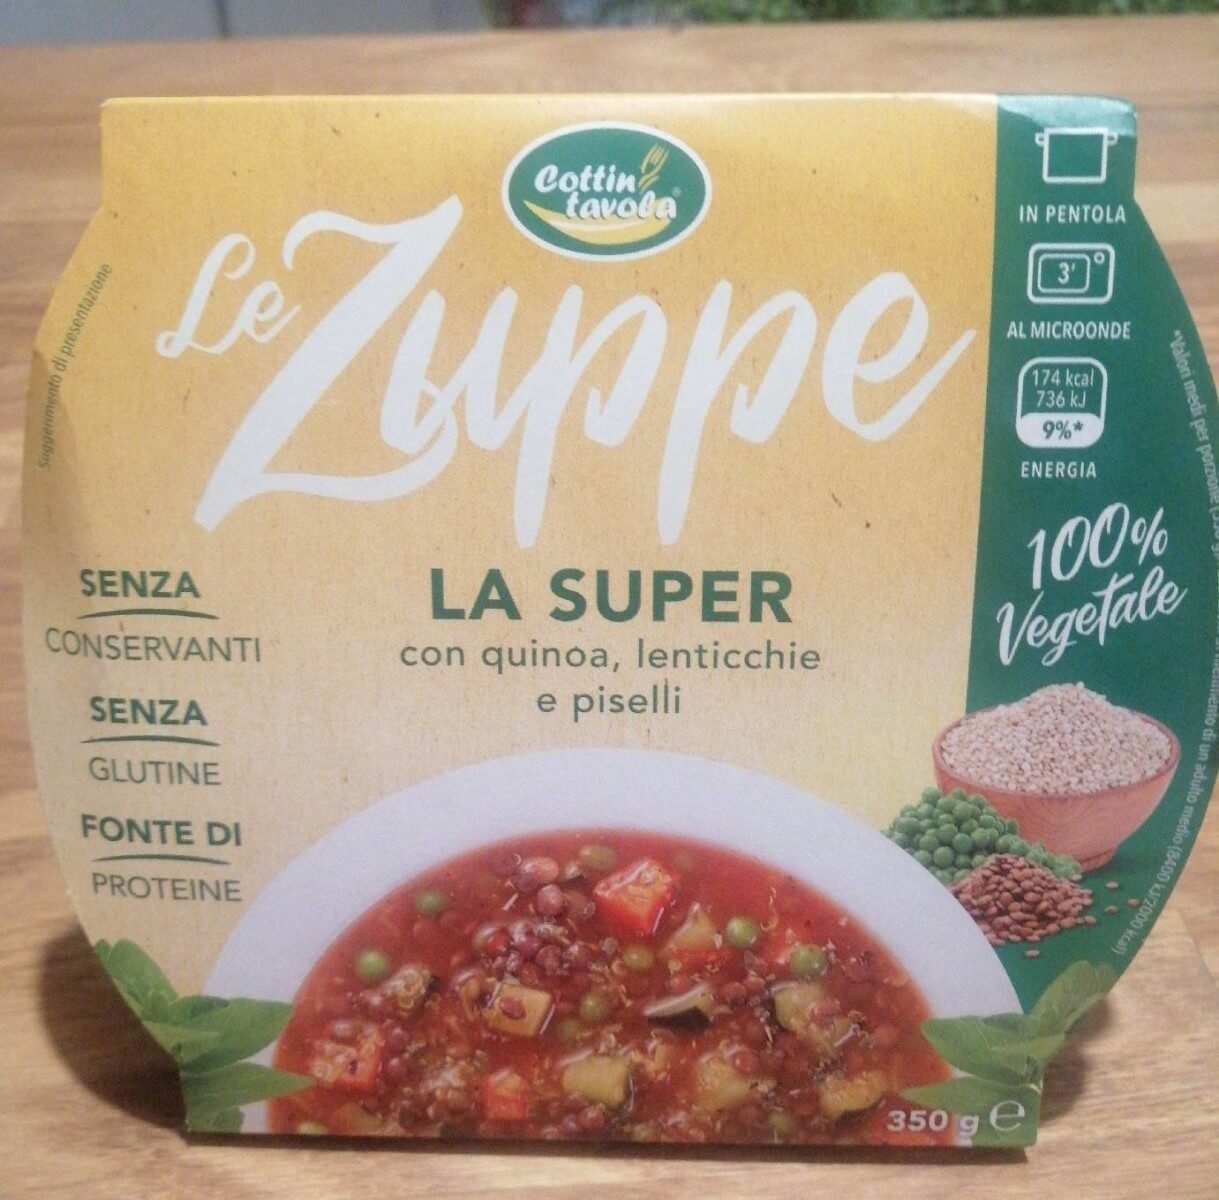 Le zuppe - Prodotto